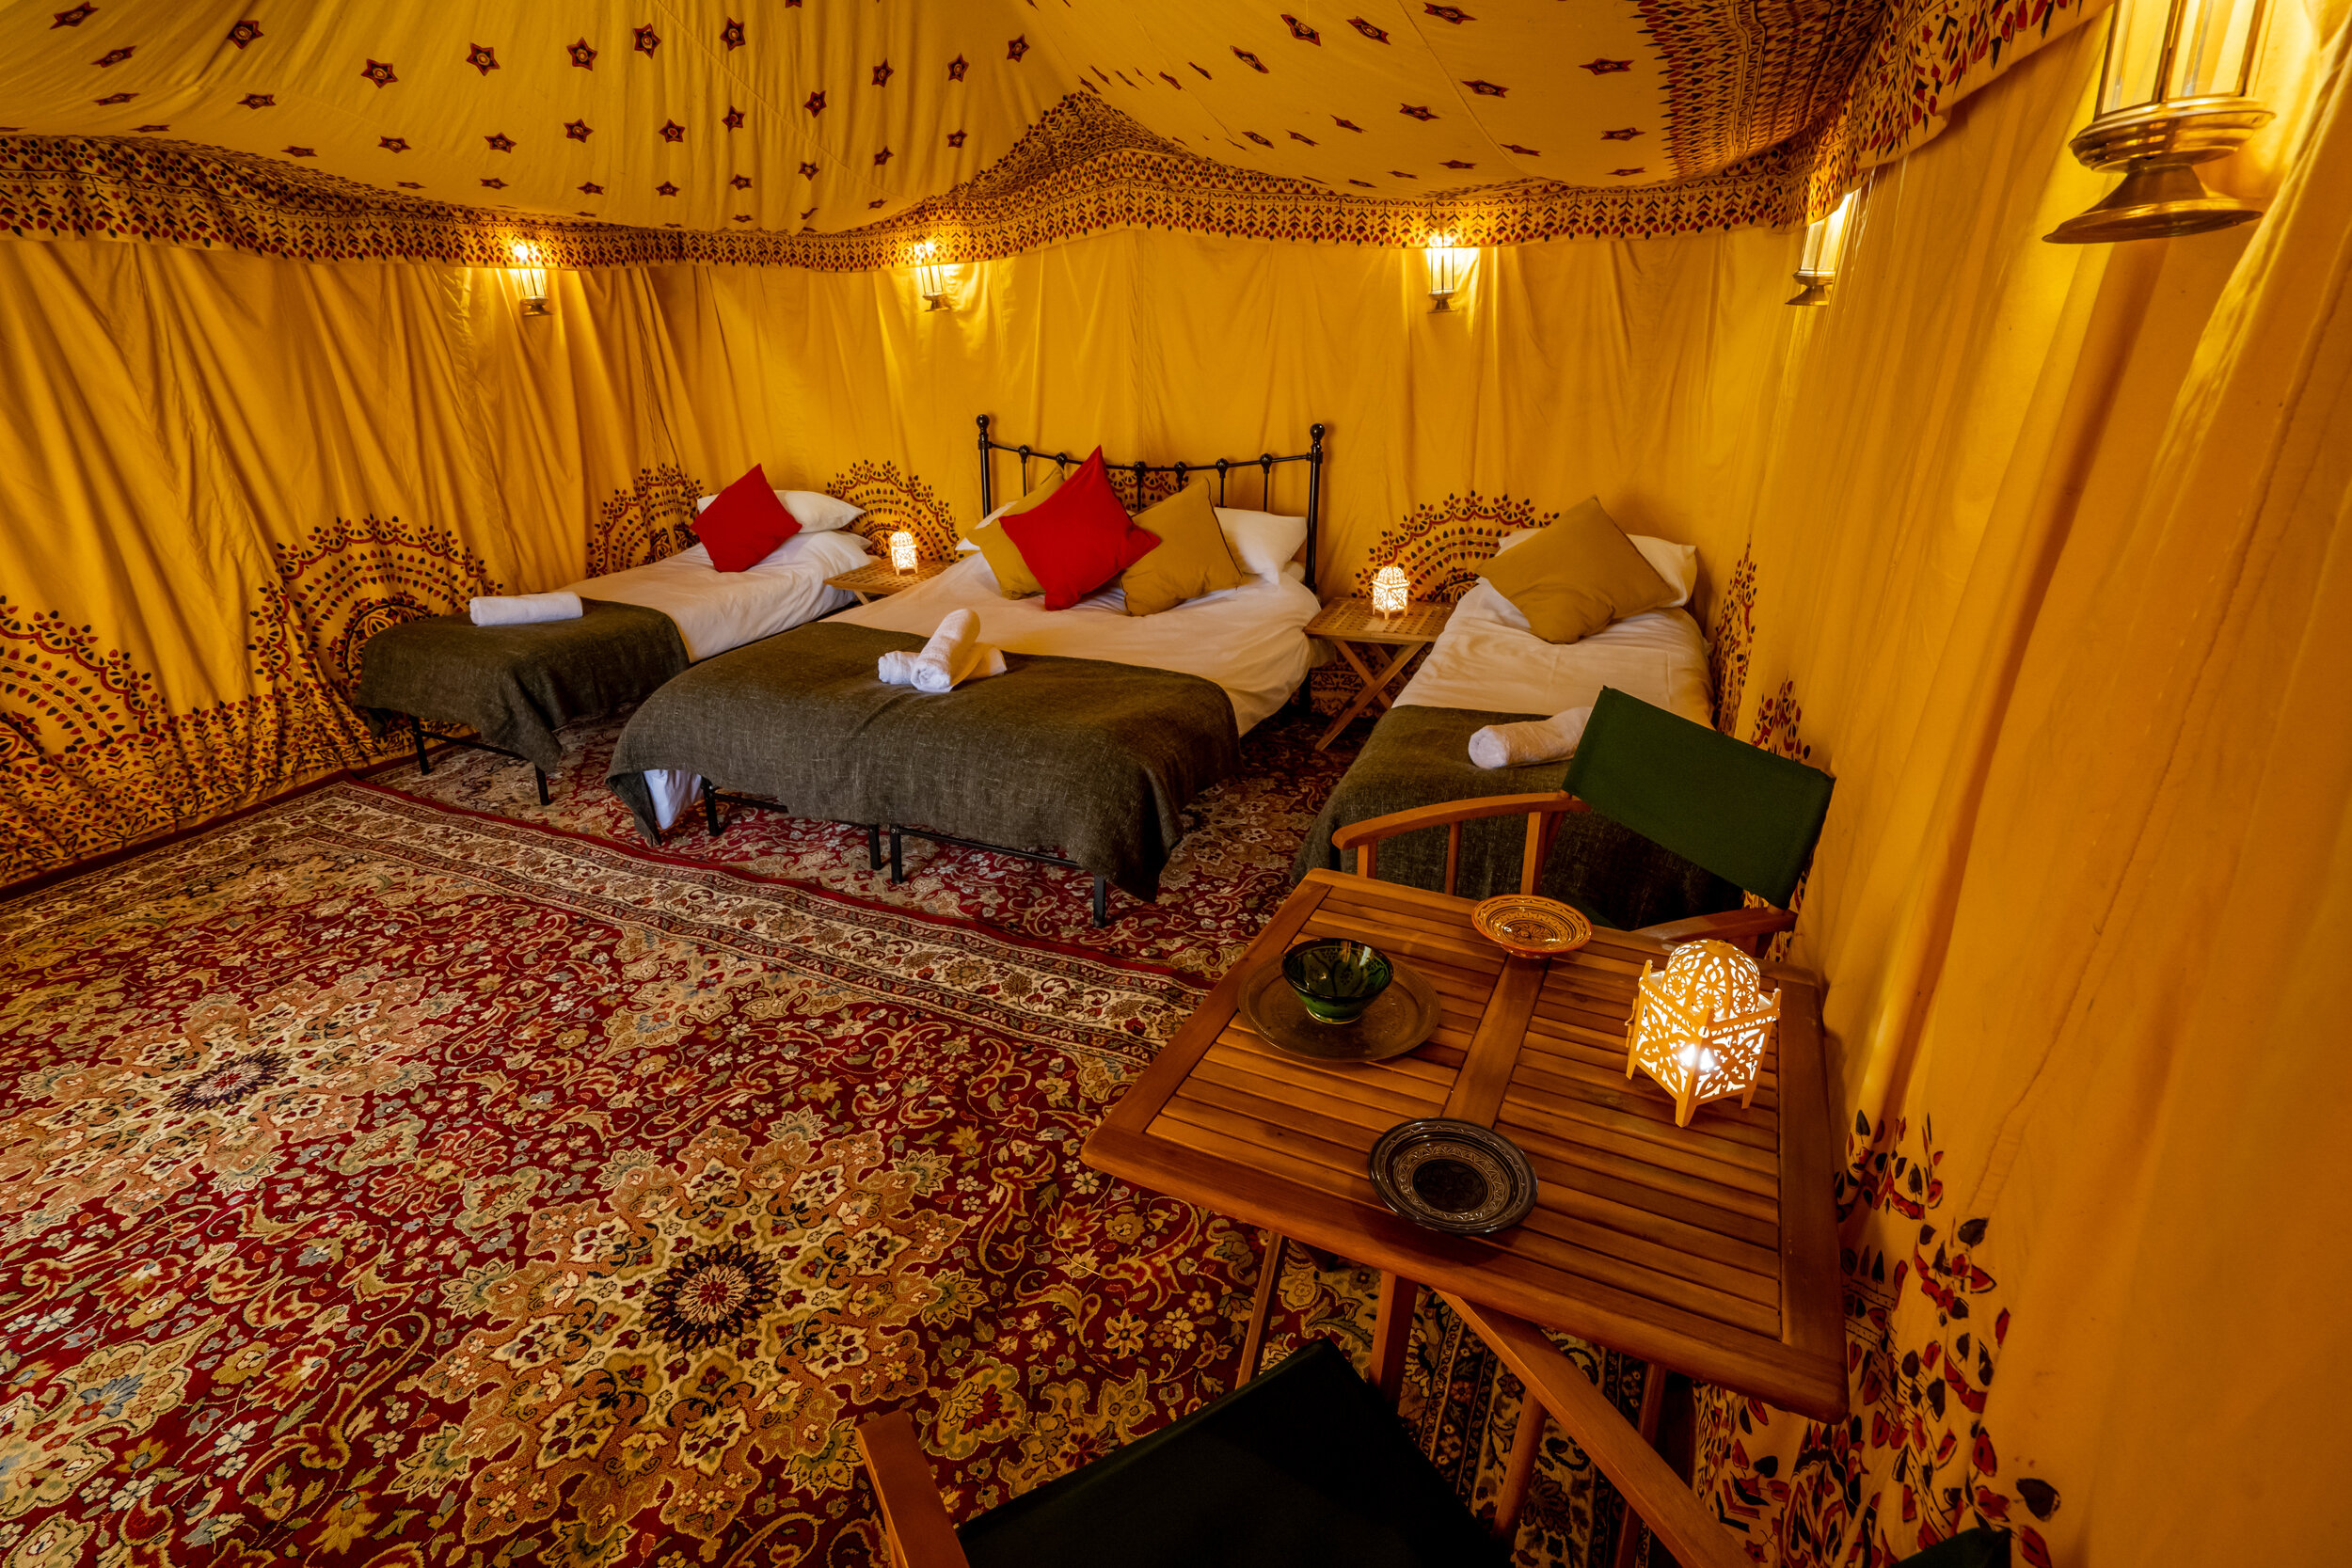 Bedouin Tent for 3